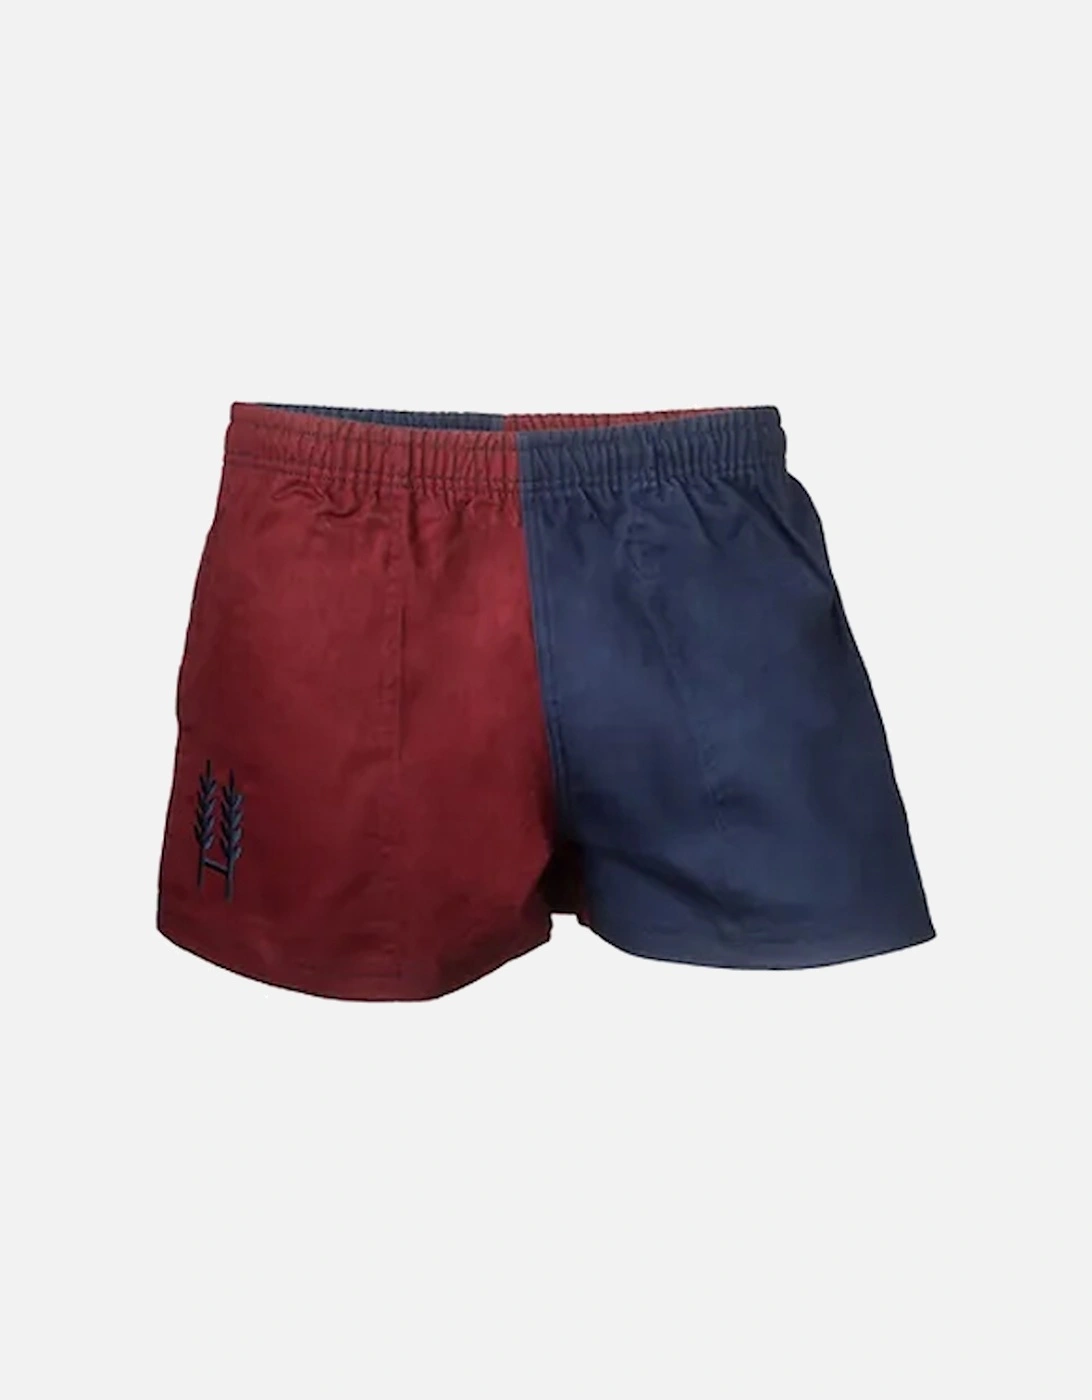 Harlequin Shorts Claret/Blue, 2 of 1